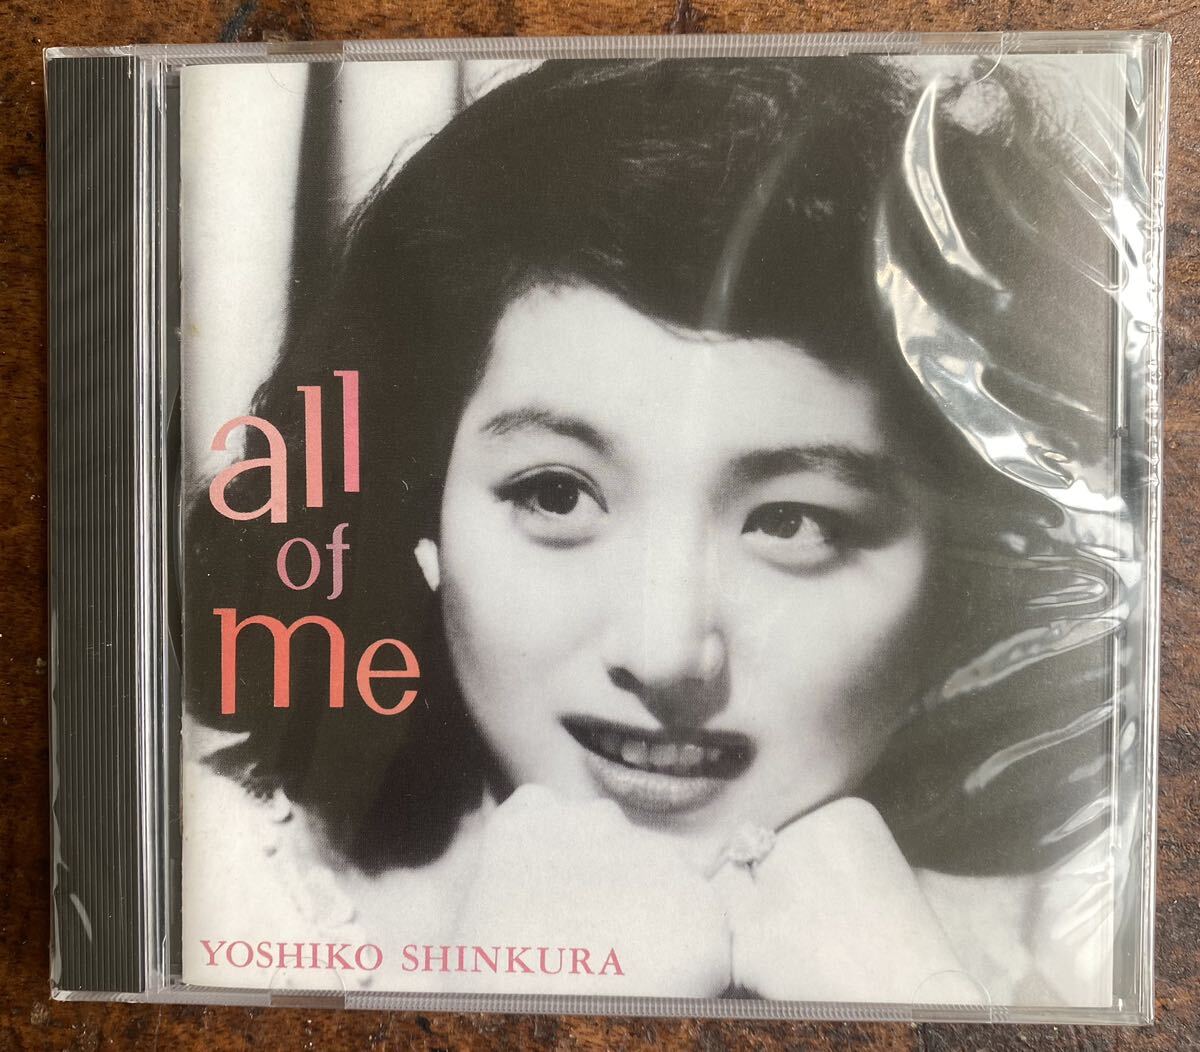 新倉美子CDオール・オブ・ミー Yoshiko Shinkura Jazz CD “All of me”_画像1